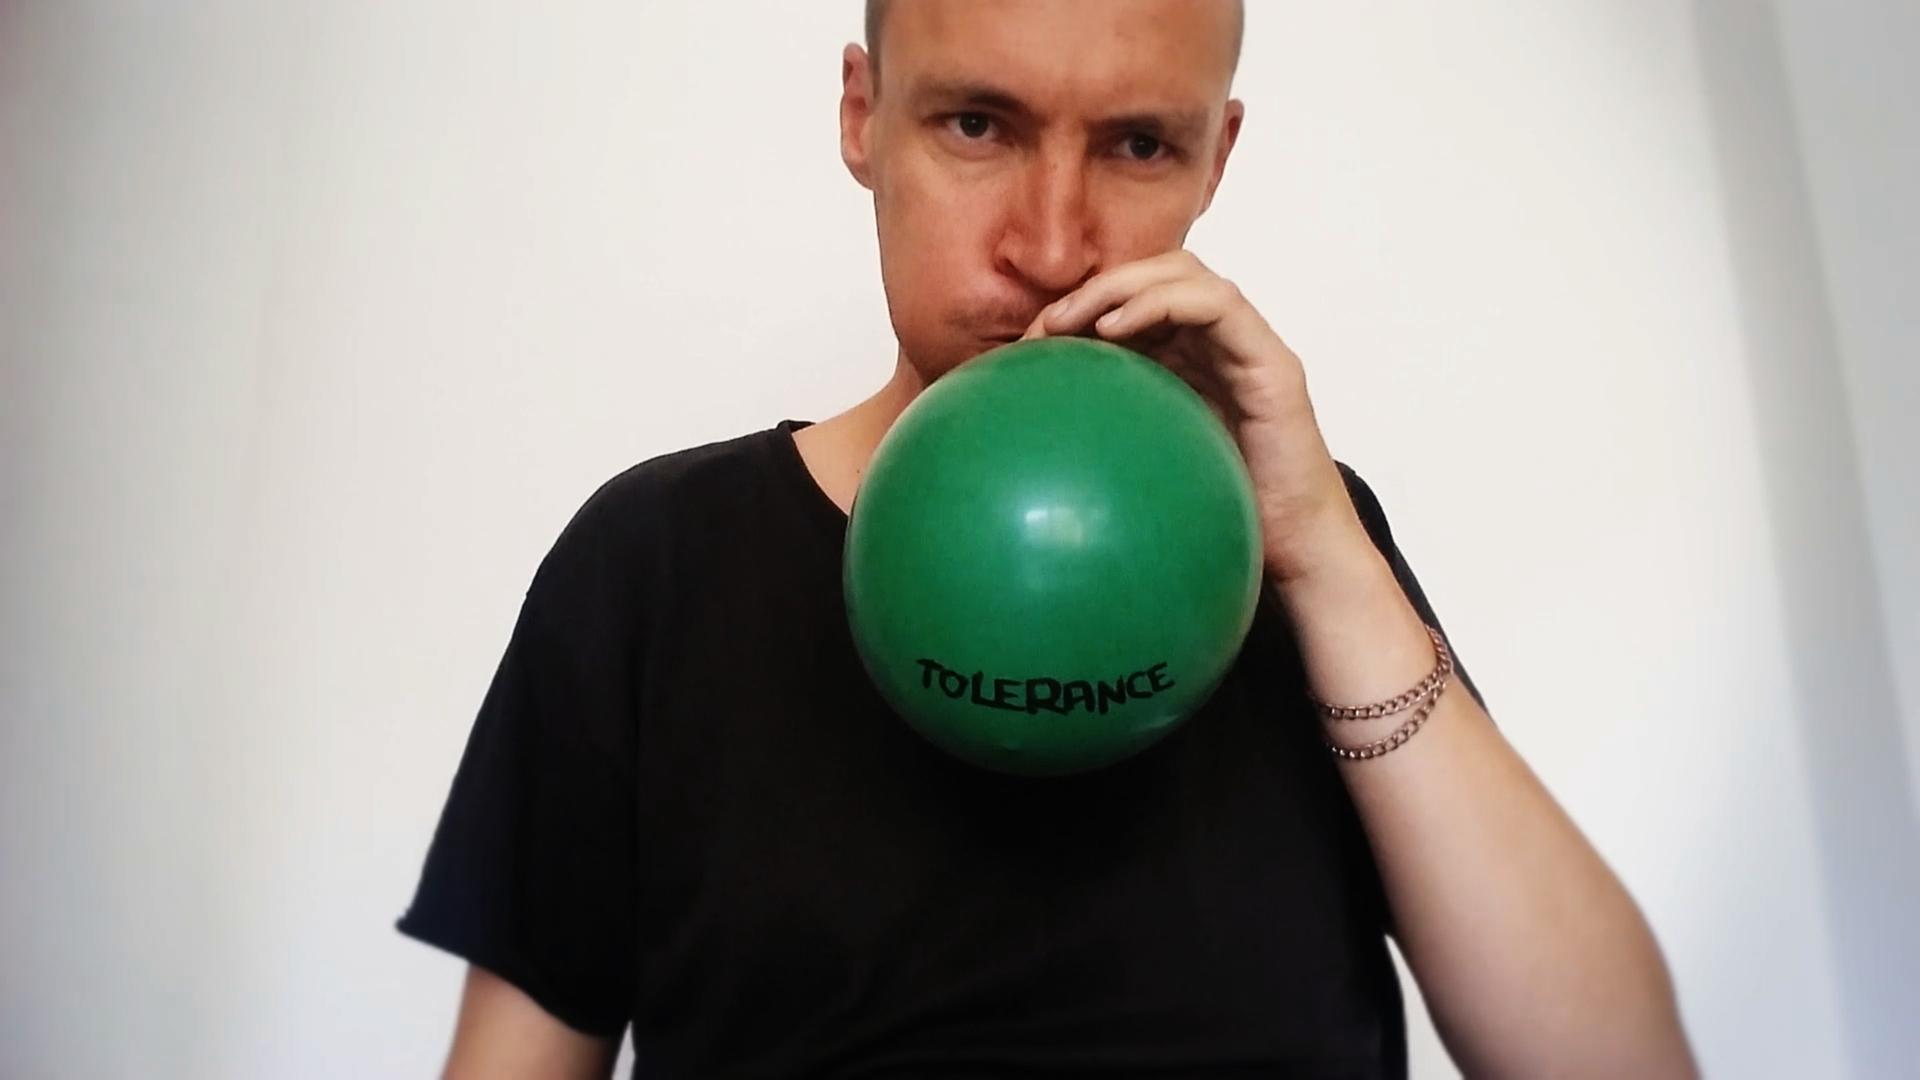 Der Audio- und Videokünstler Kuesti Fraun bläst einen grünen Luftballon auf mit der Beschriftung "Tolerance"